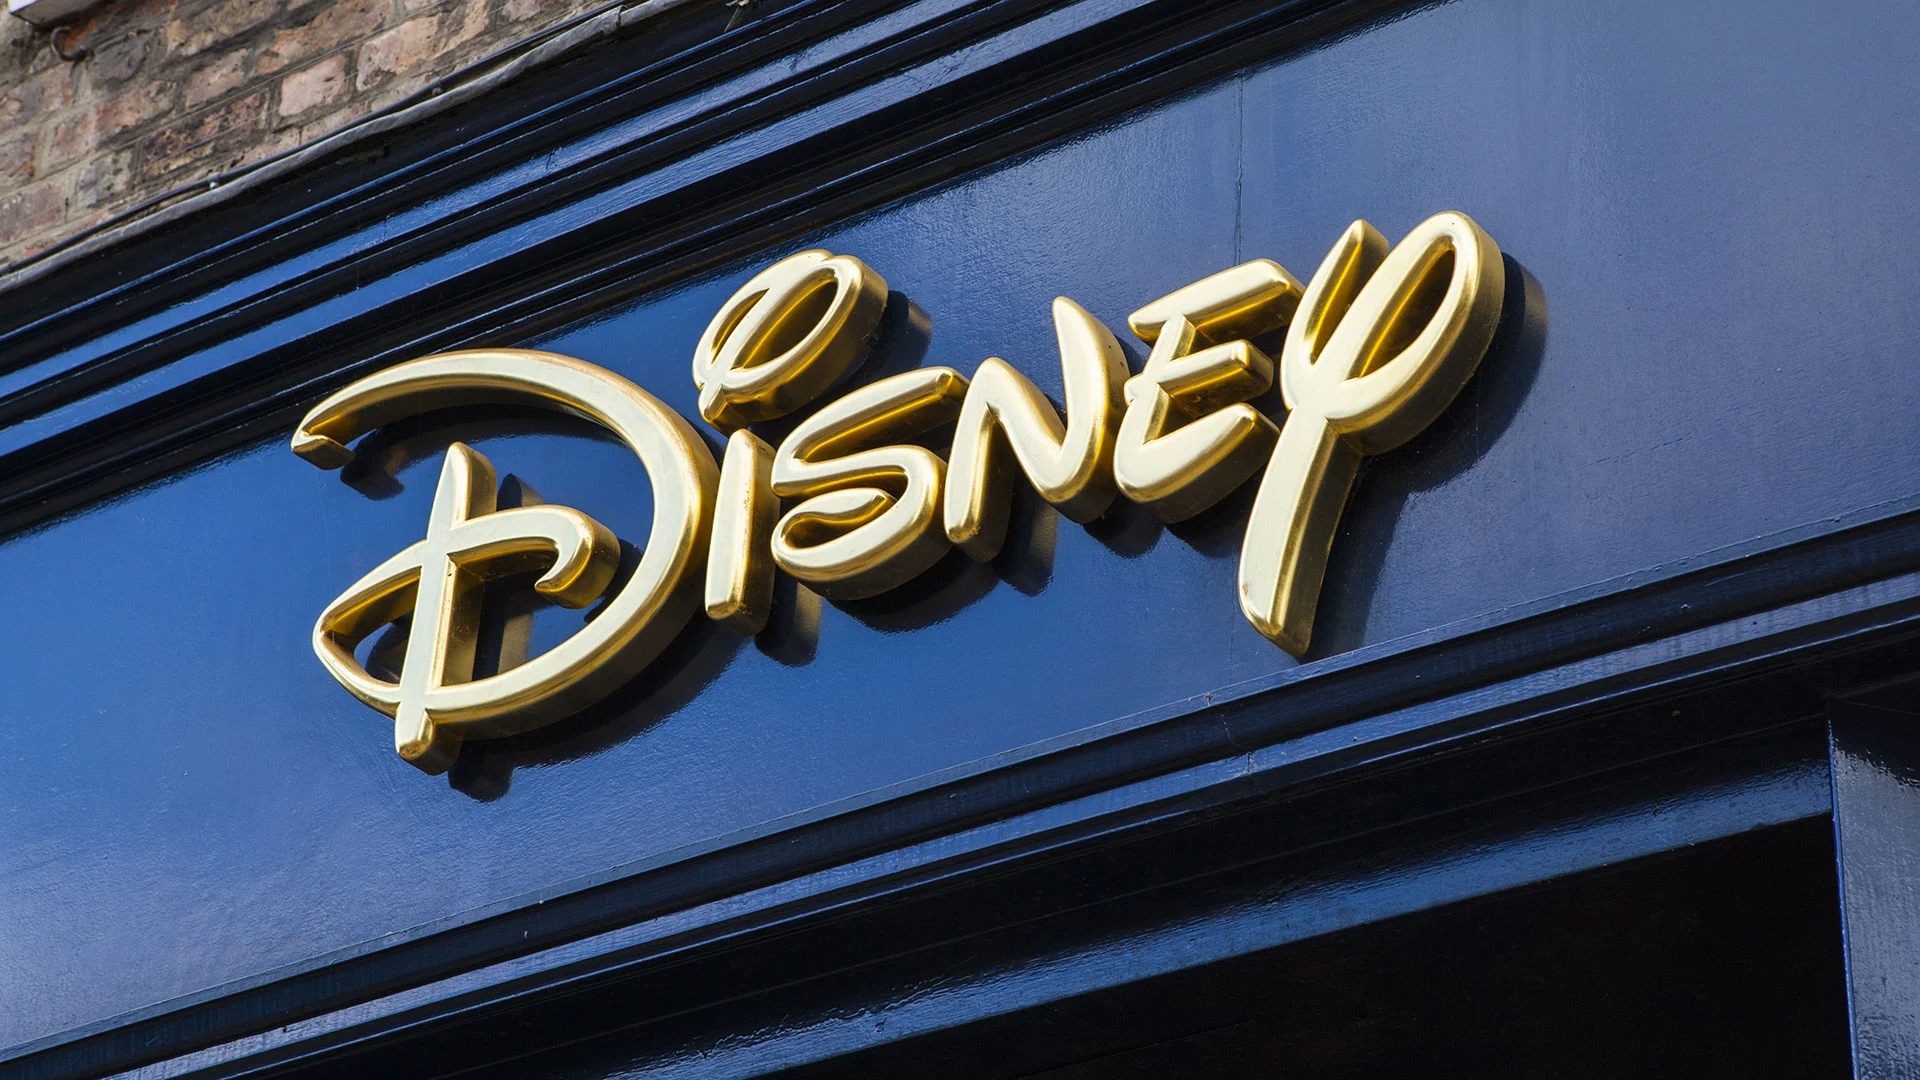 Milliardenschwerer Hedgefonds investiert massiv in Disney: Was bedeutet das für die Aktie? (Foto: chrisdorney/Shutterstock)